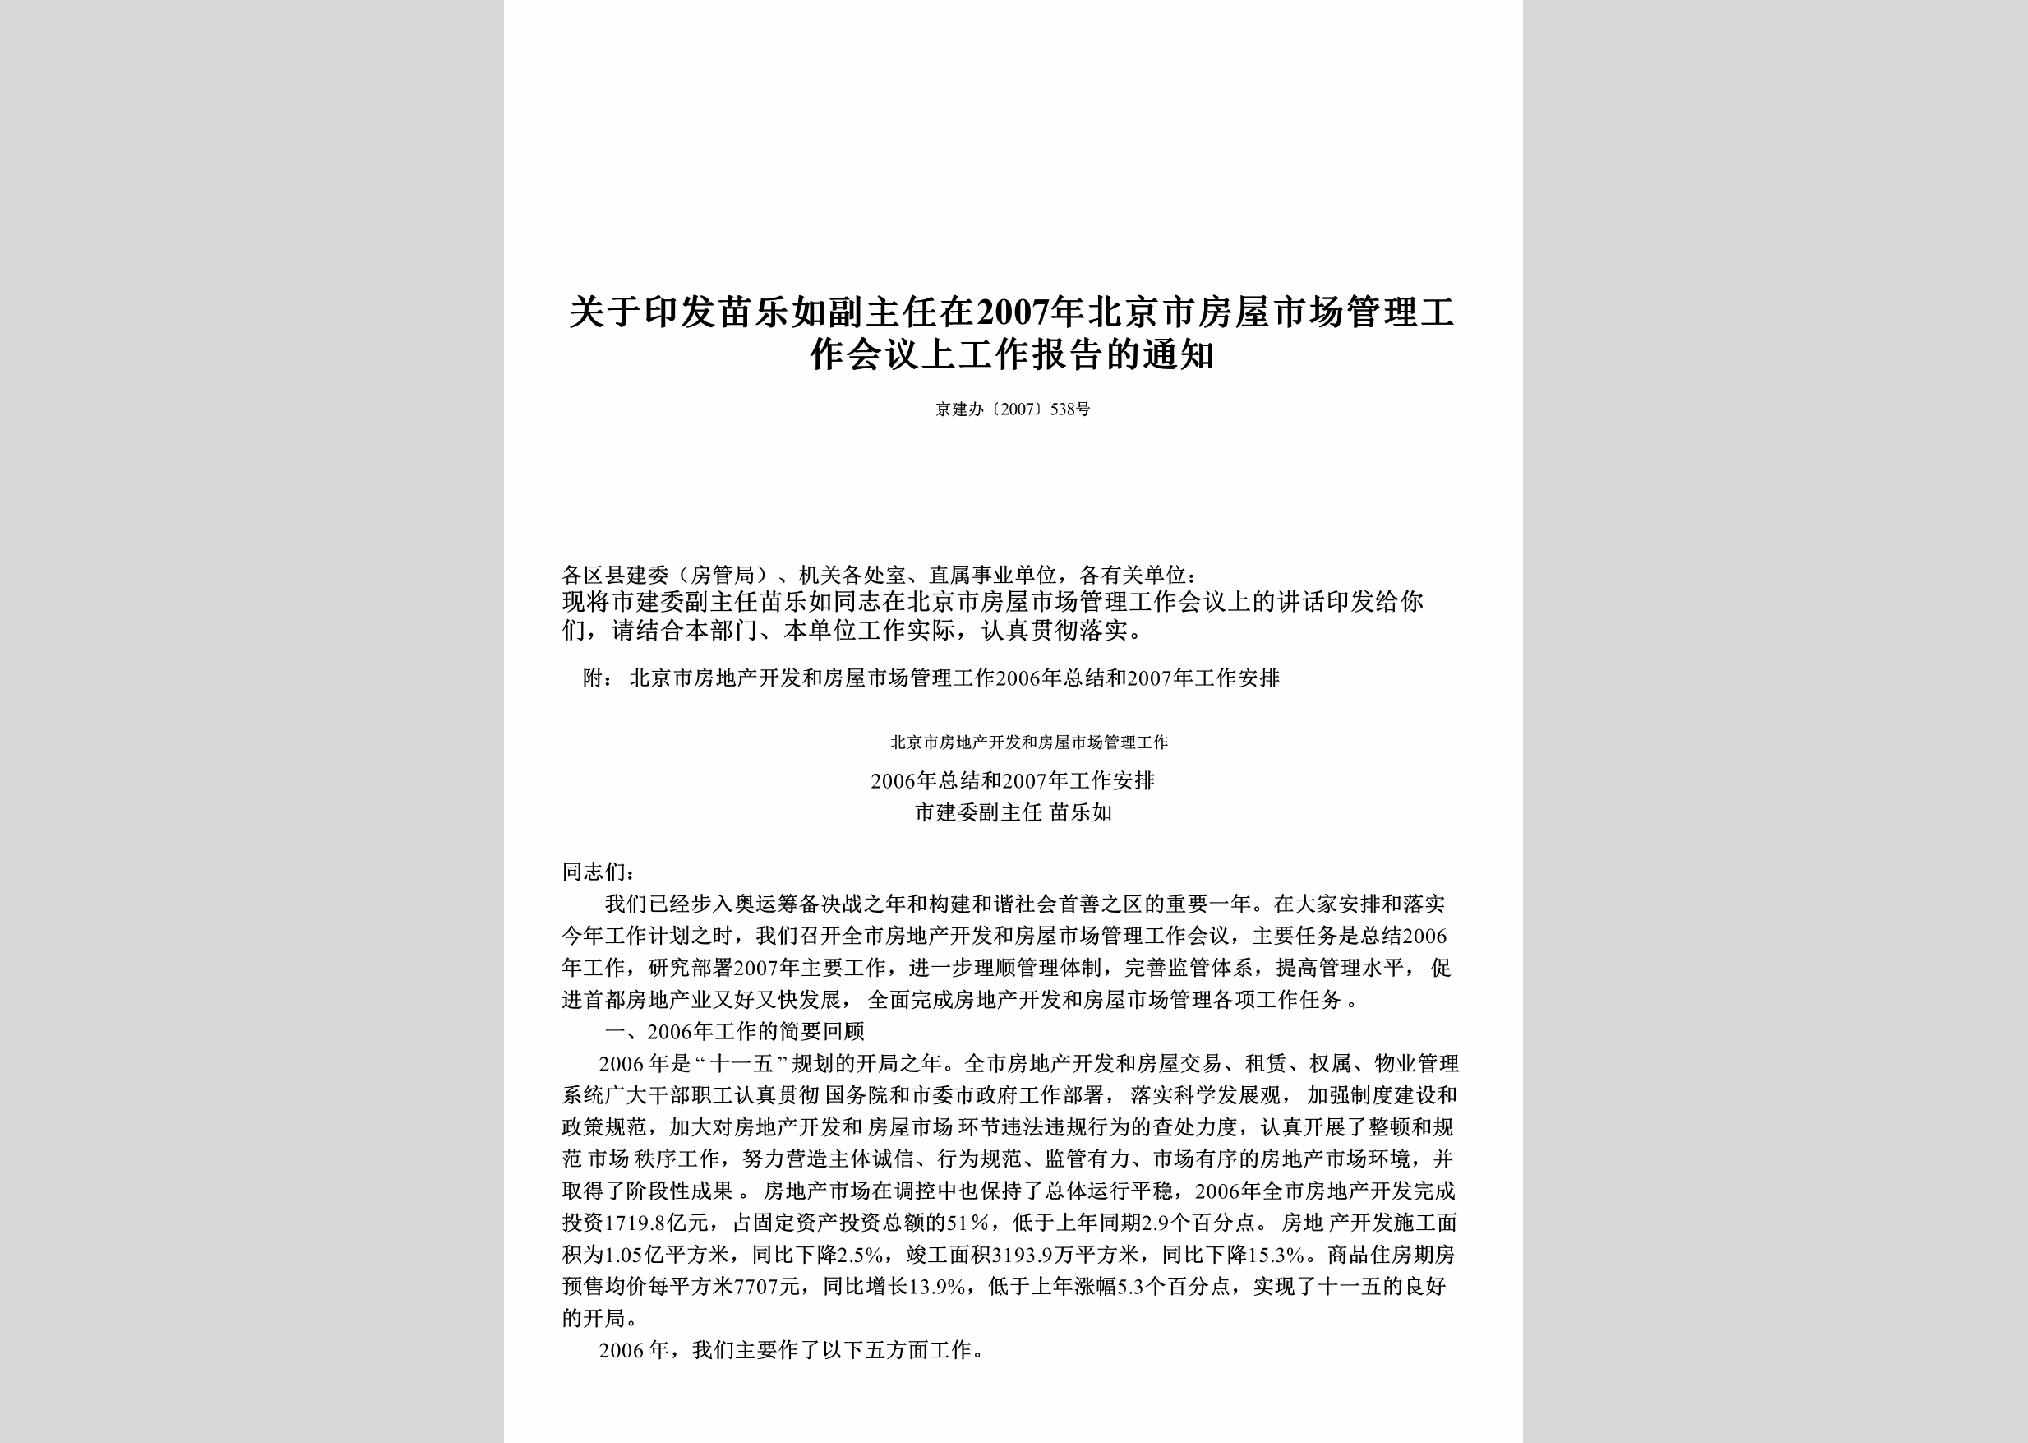 京建办[2007]538号：关于印发苗乐如副主任在2007年北京市房屋市场管理工作会议上工作报告的通知